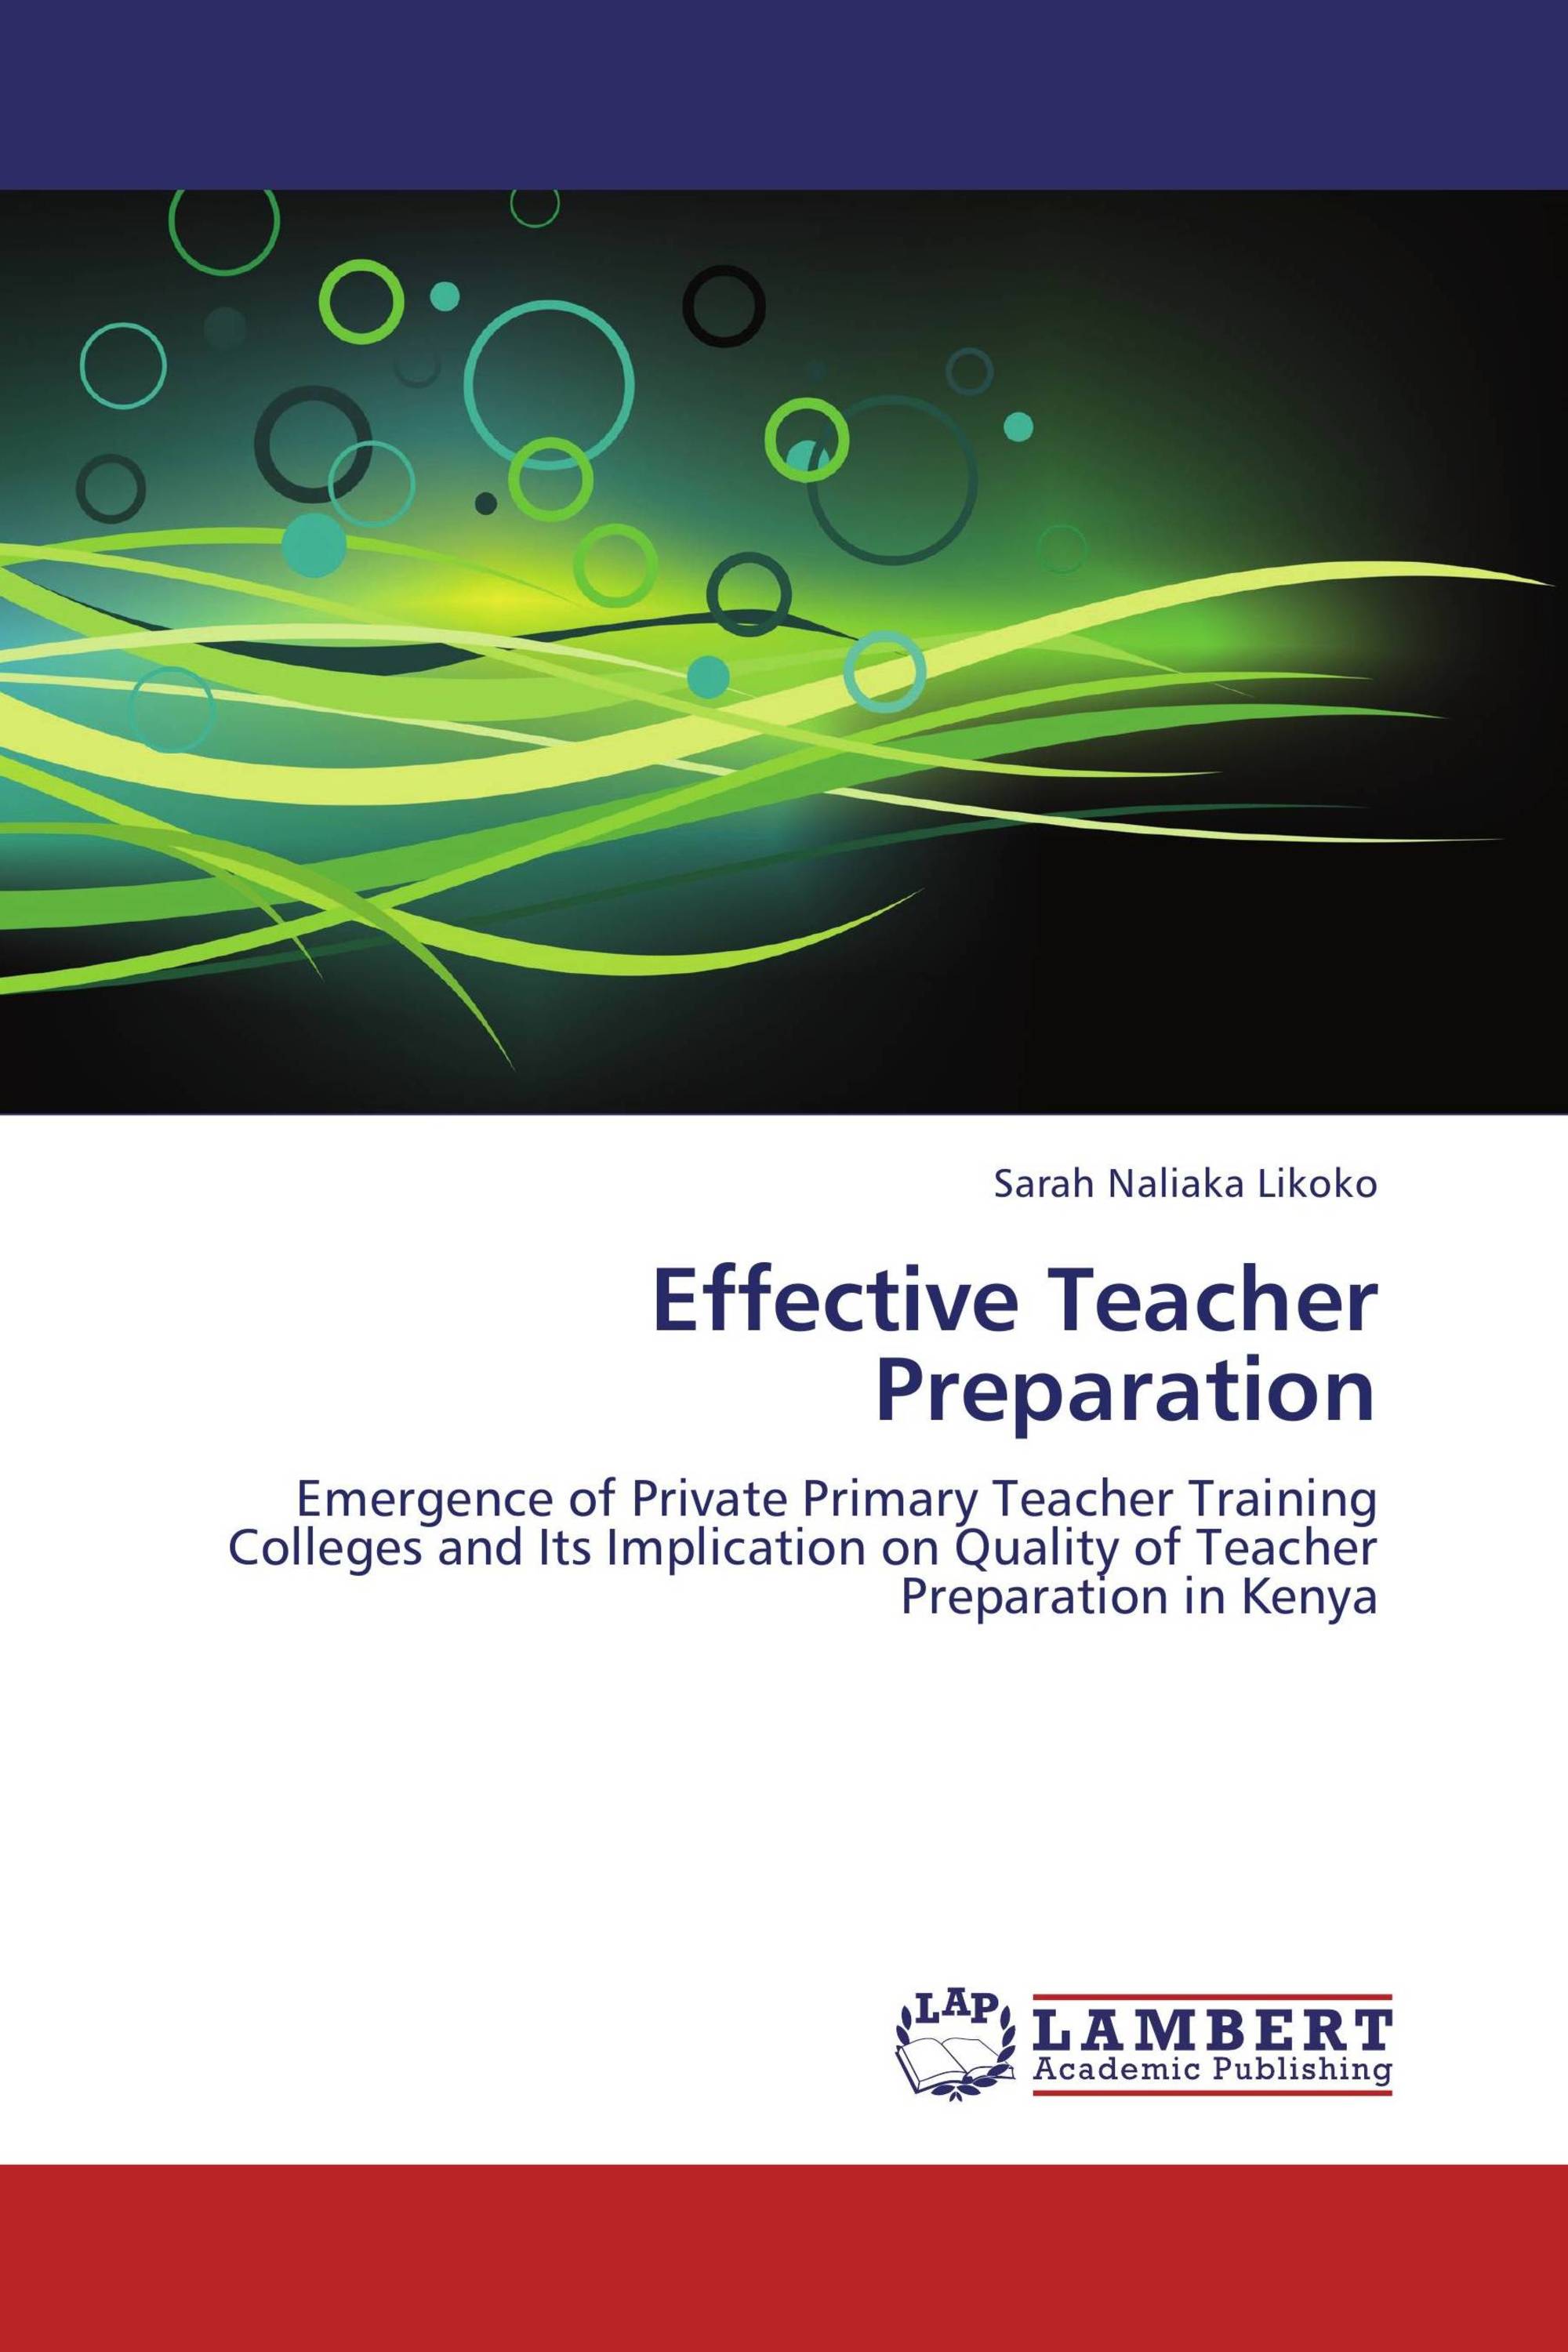 thesis on teacher preparation